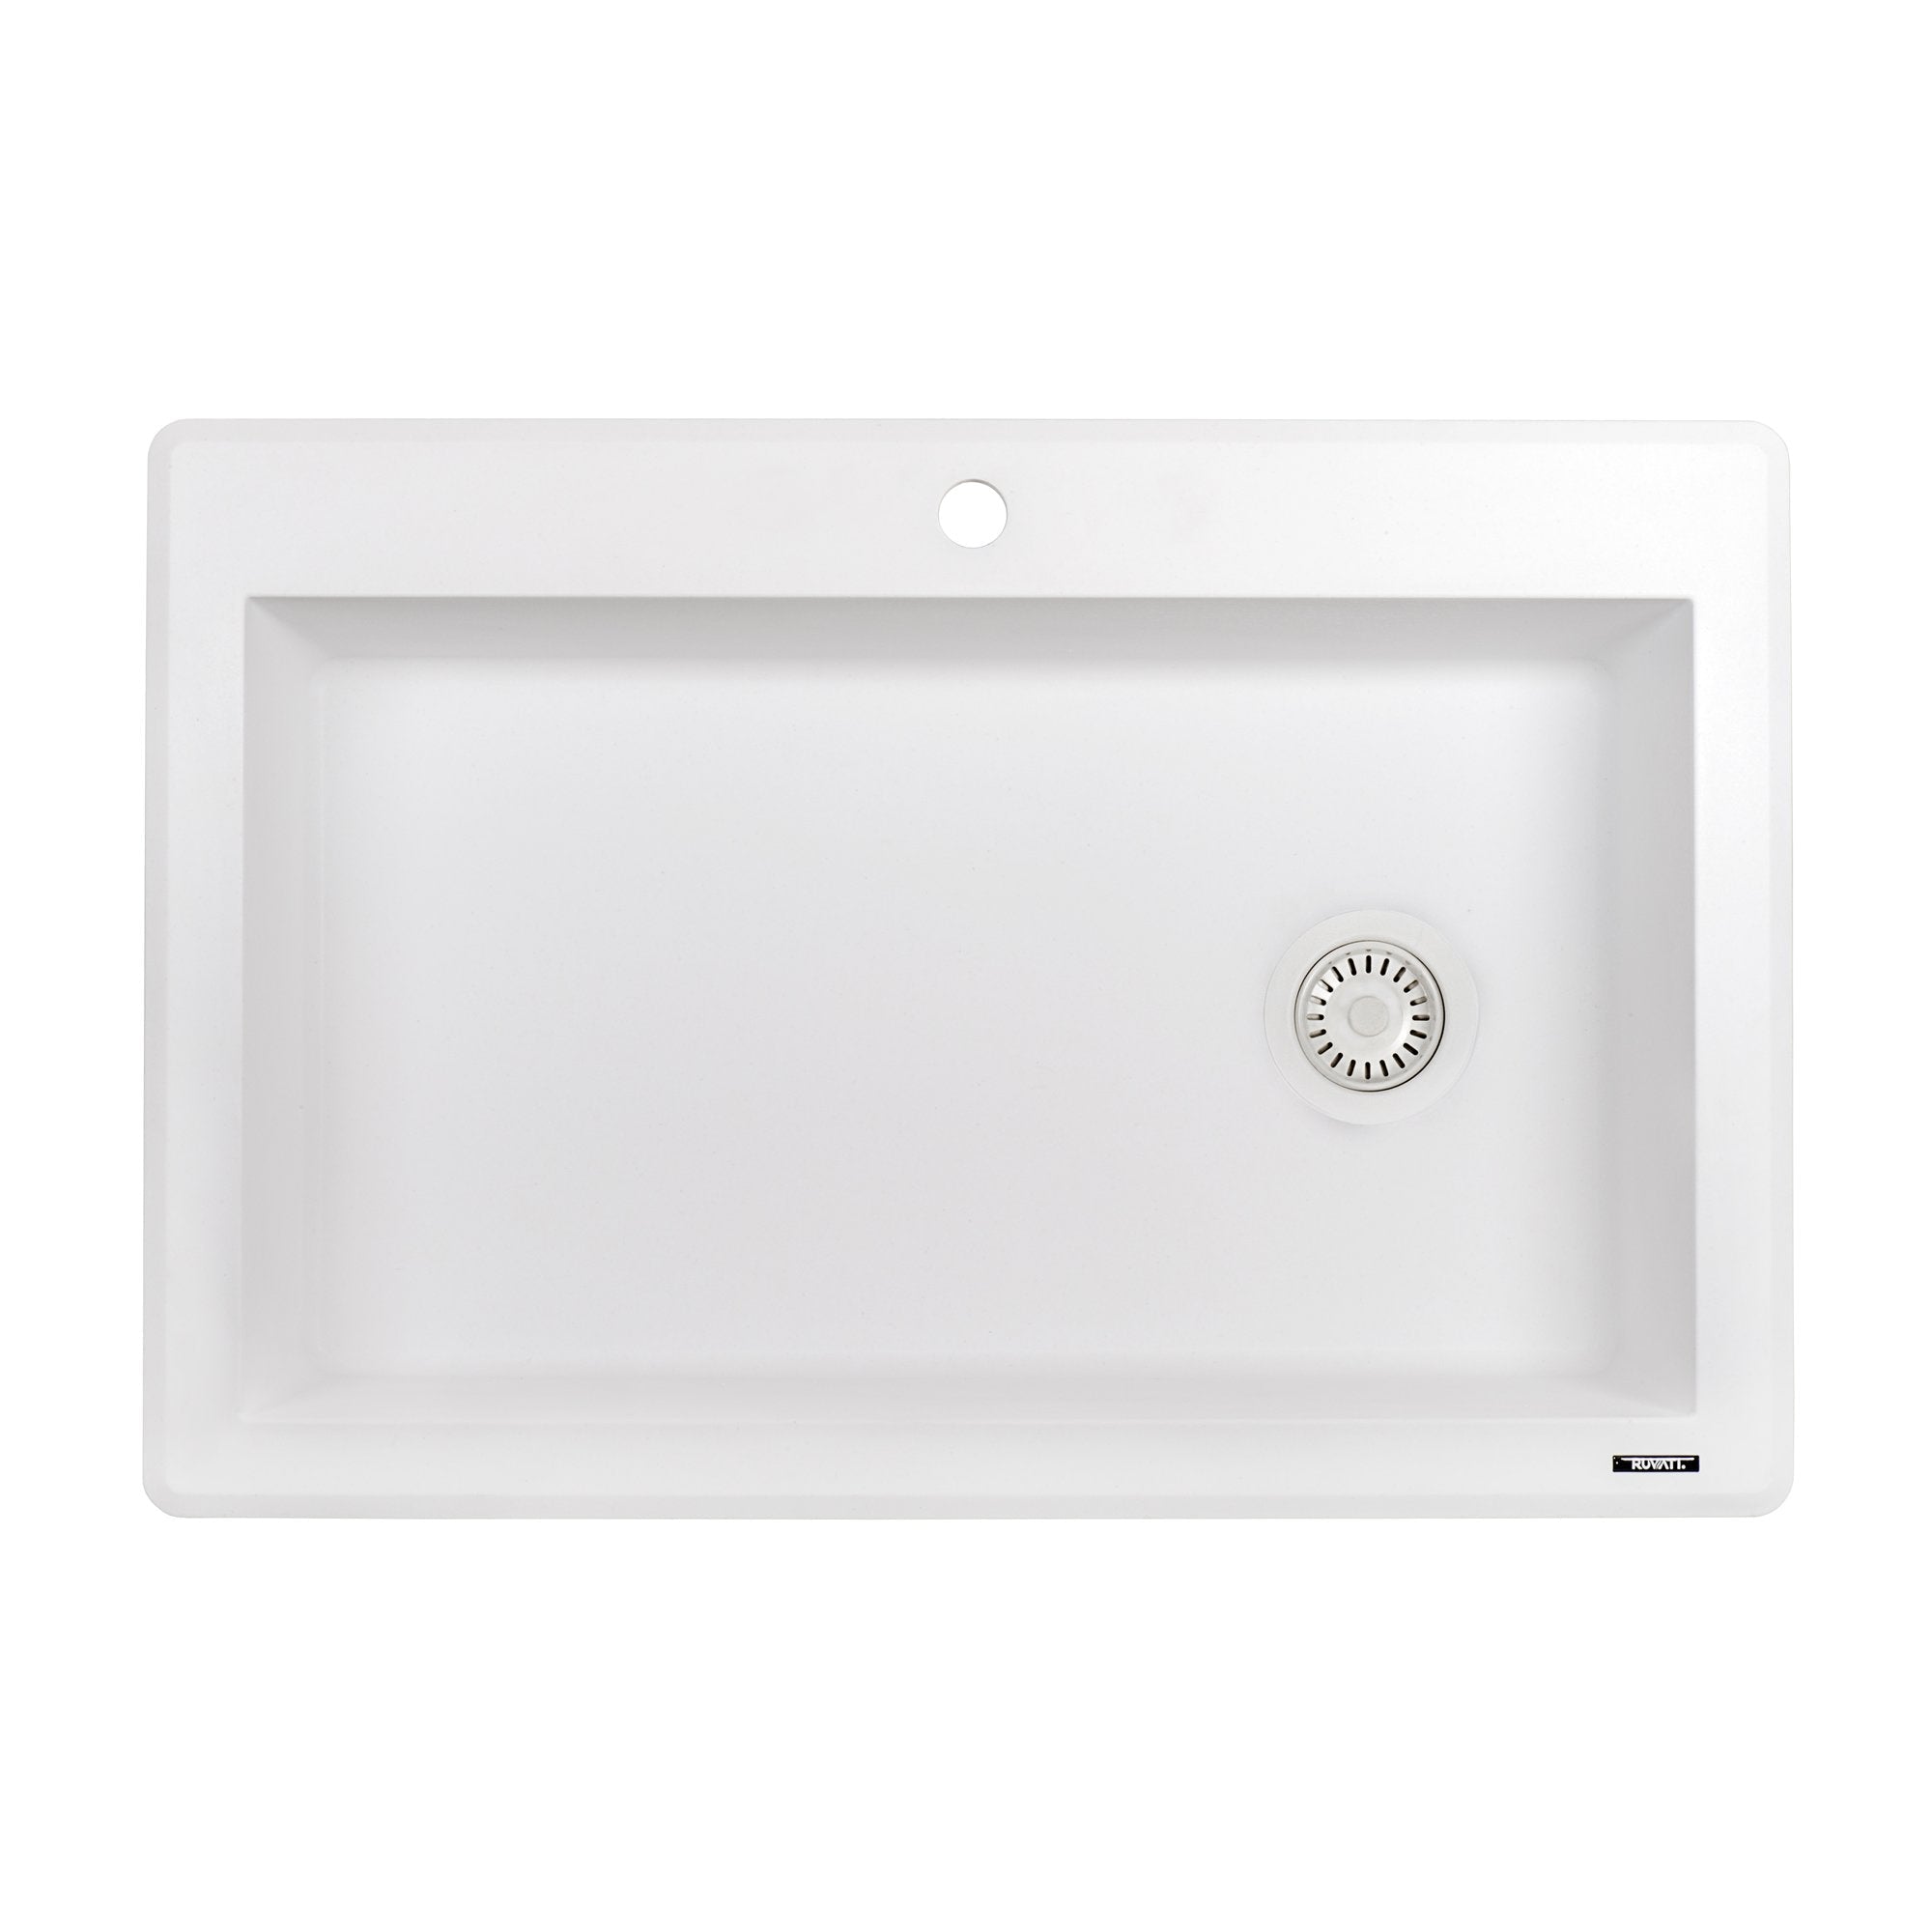 Ruvati 33" x 22" Granite Composite Topmount Single BowlKitchen Sink in White RVG1033WH